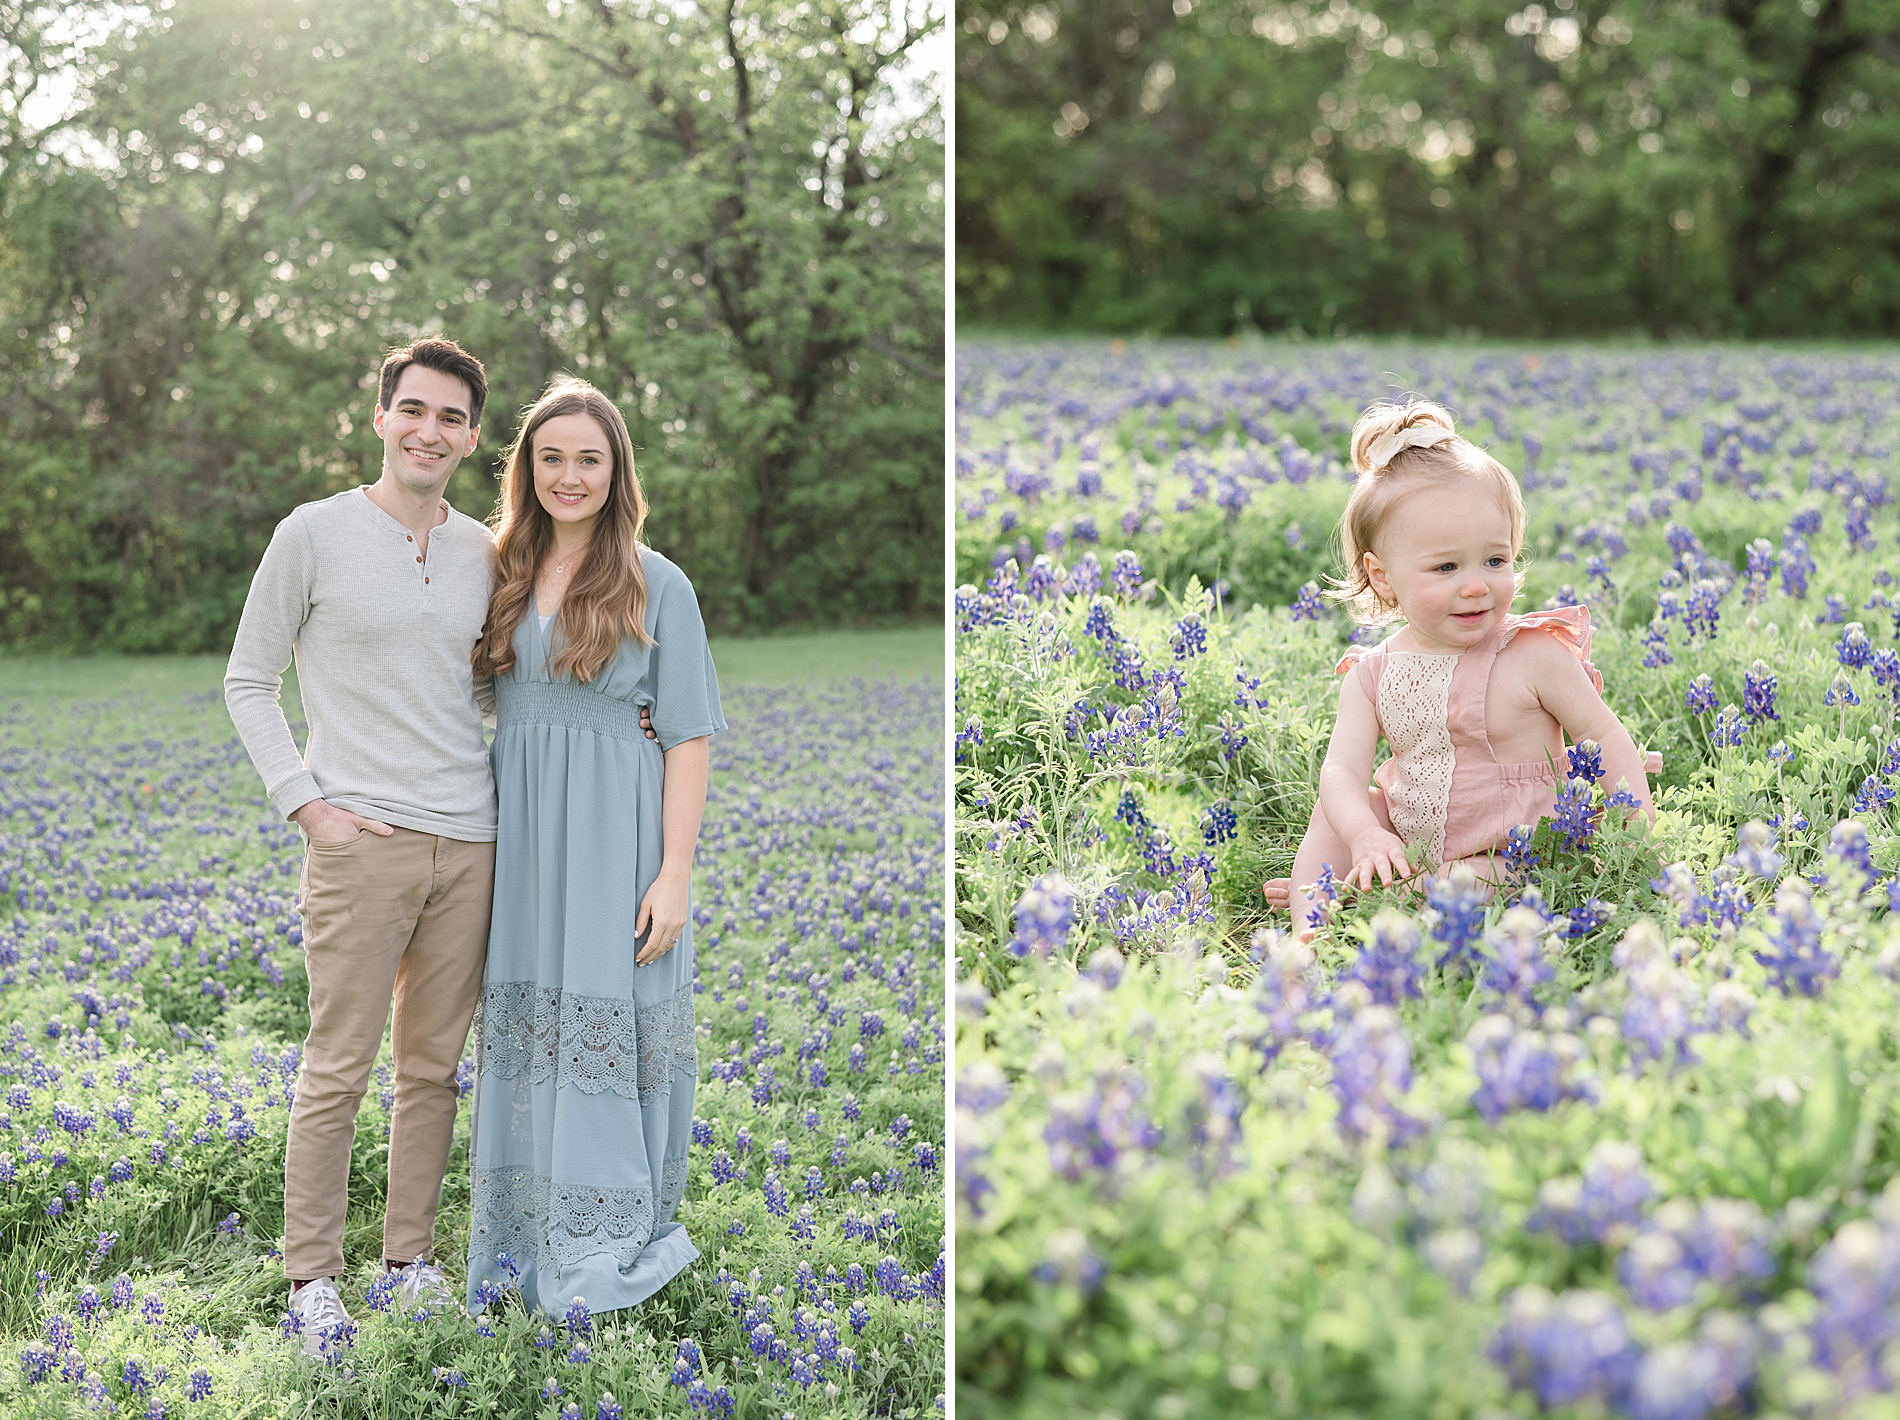 Dallas Texas Bluebonnet family Photos taken by Lindsey Dutton Photography, a Dallas family photographer